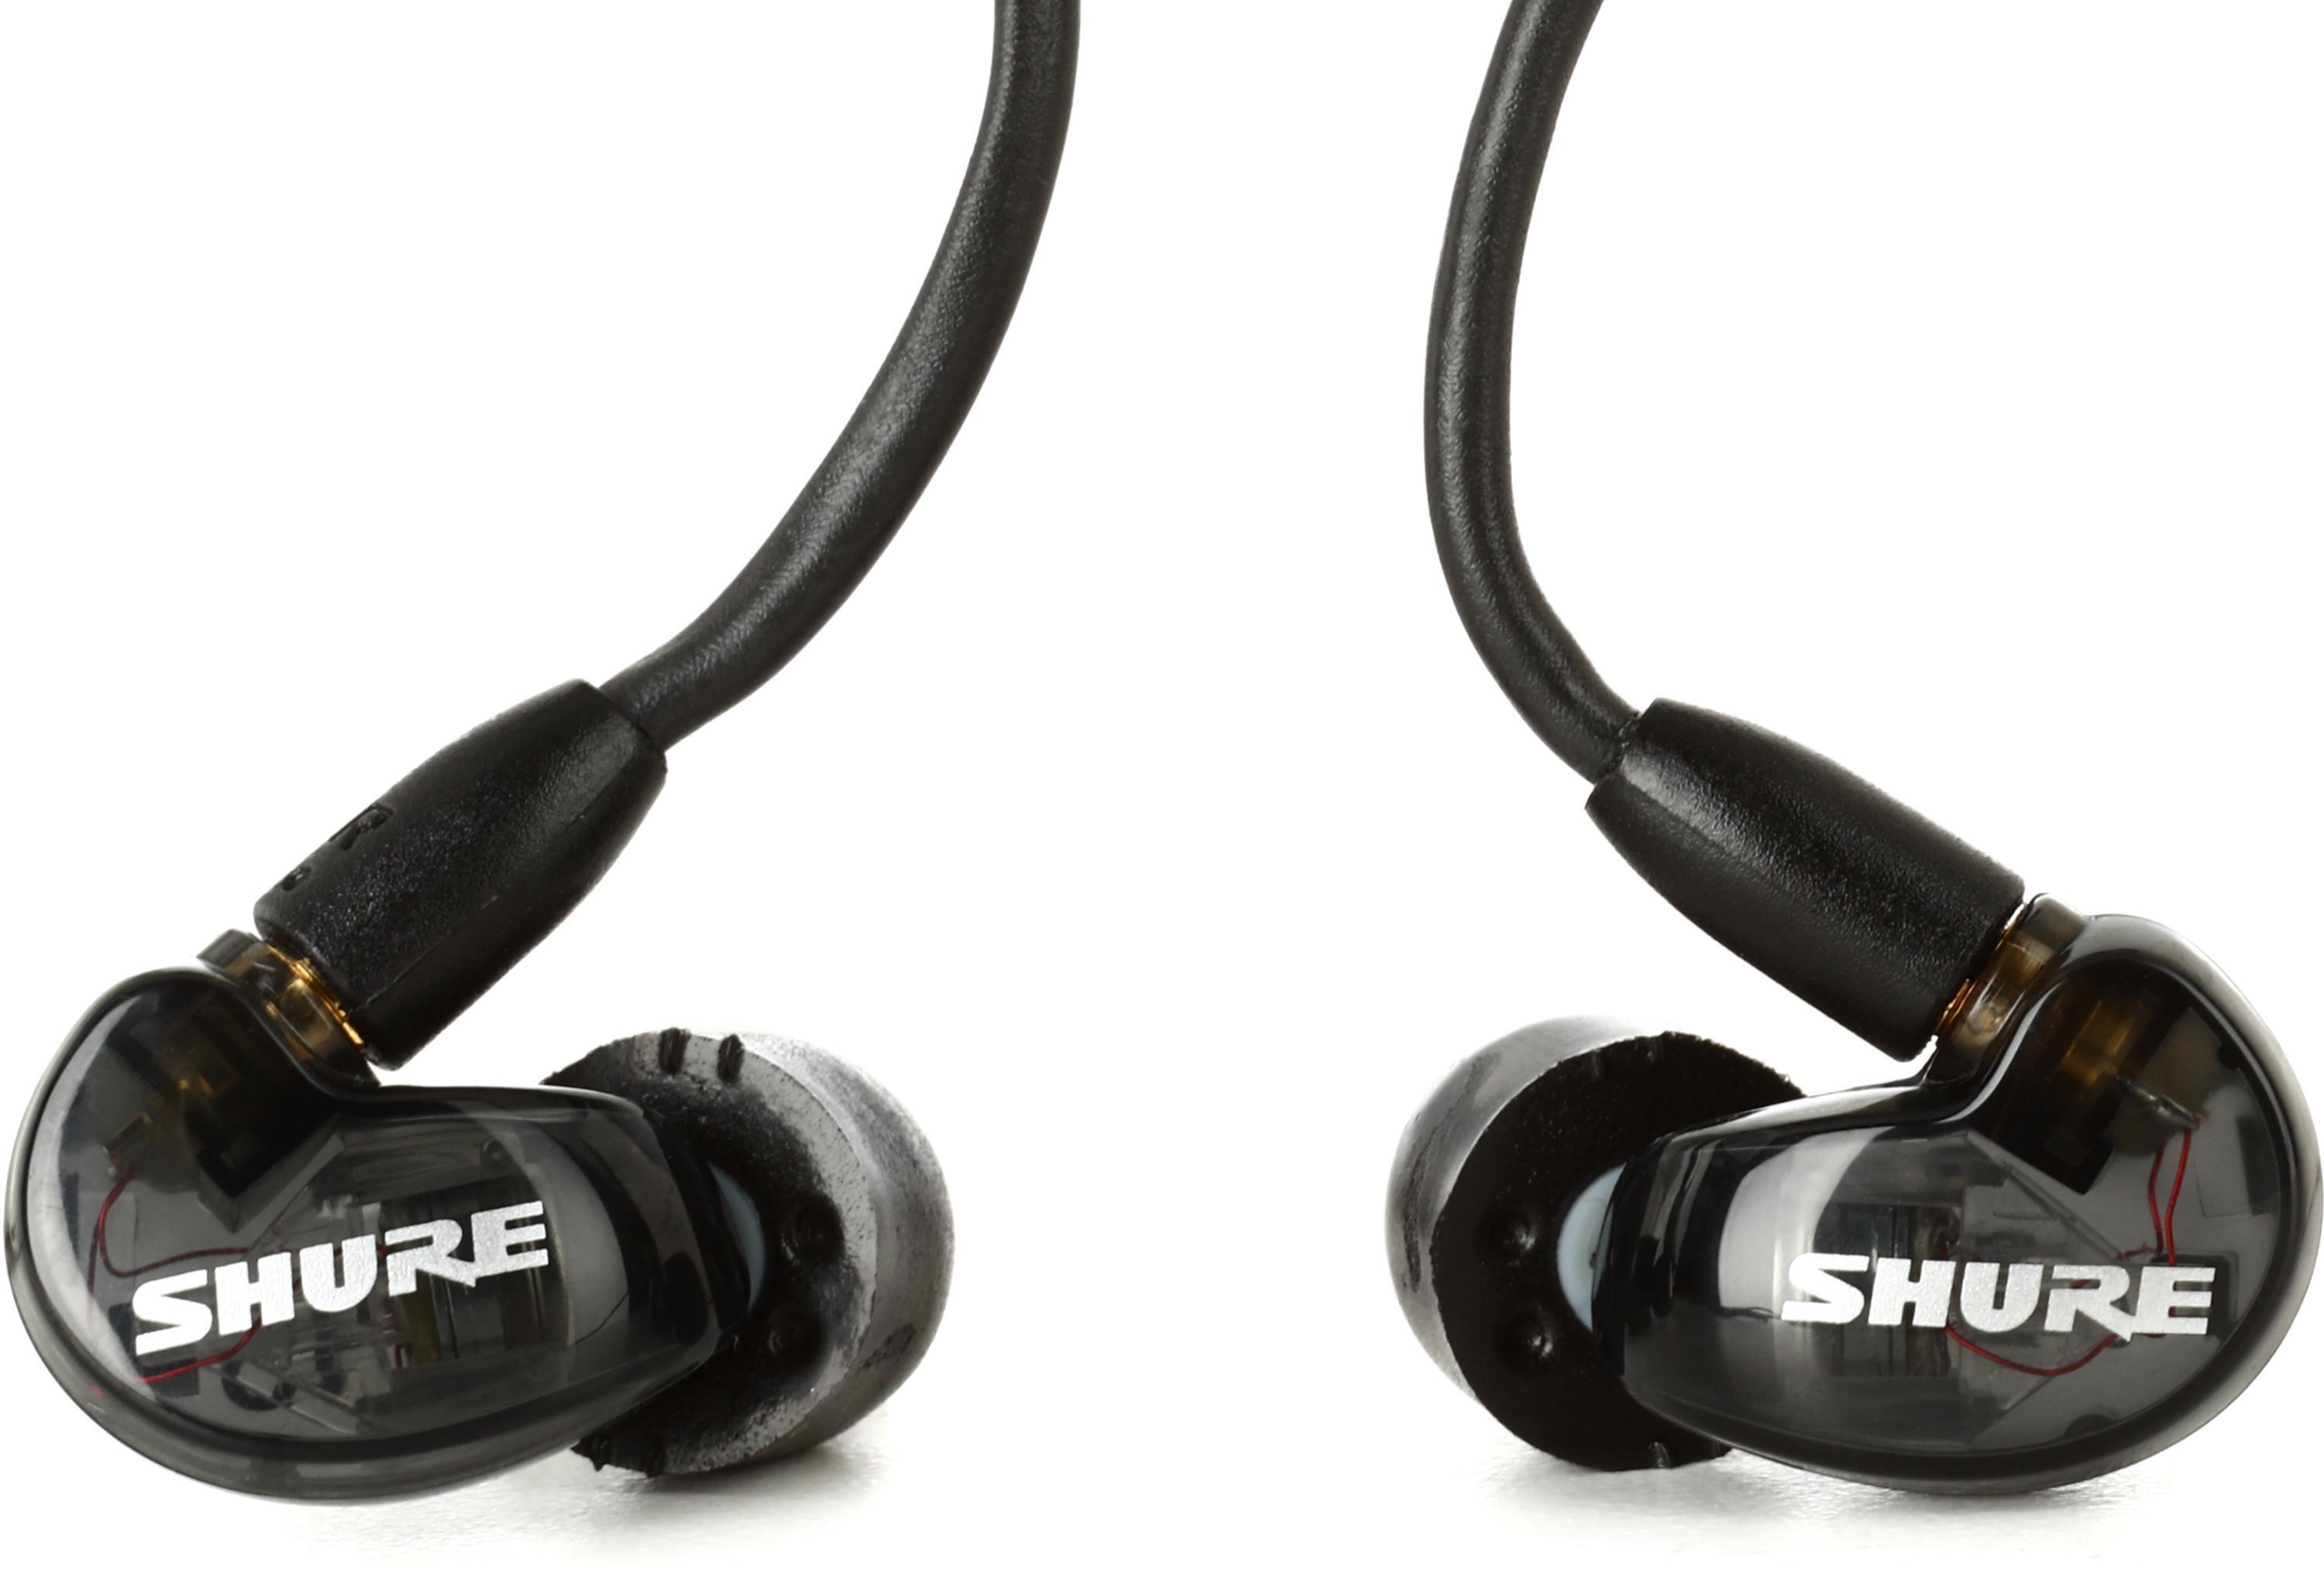 SHURE SE215 Sound Isolating In-Ear Headphones 3.5mm Jack Earphones